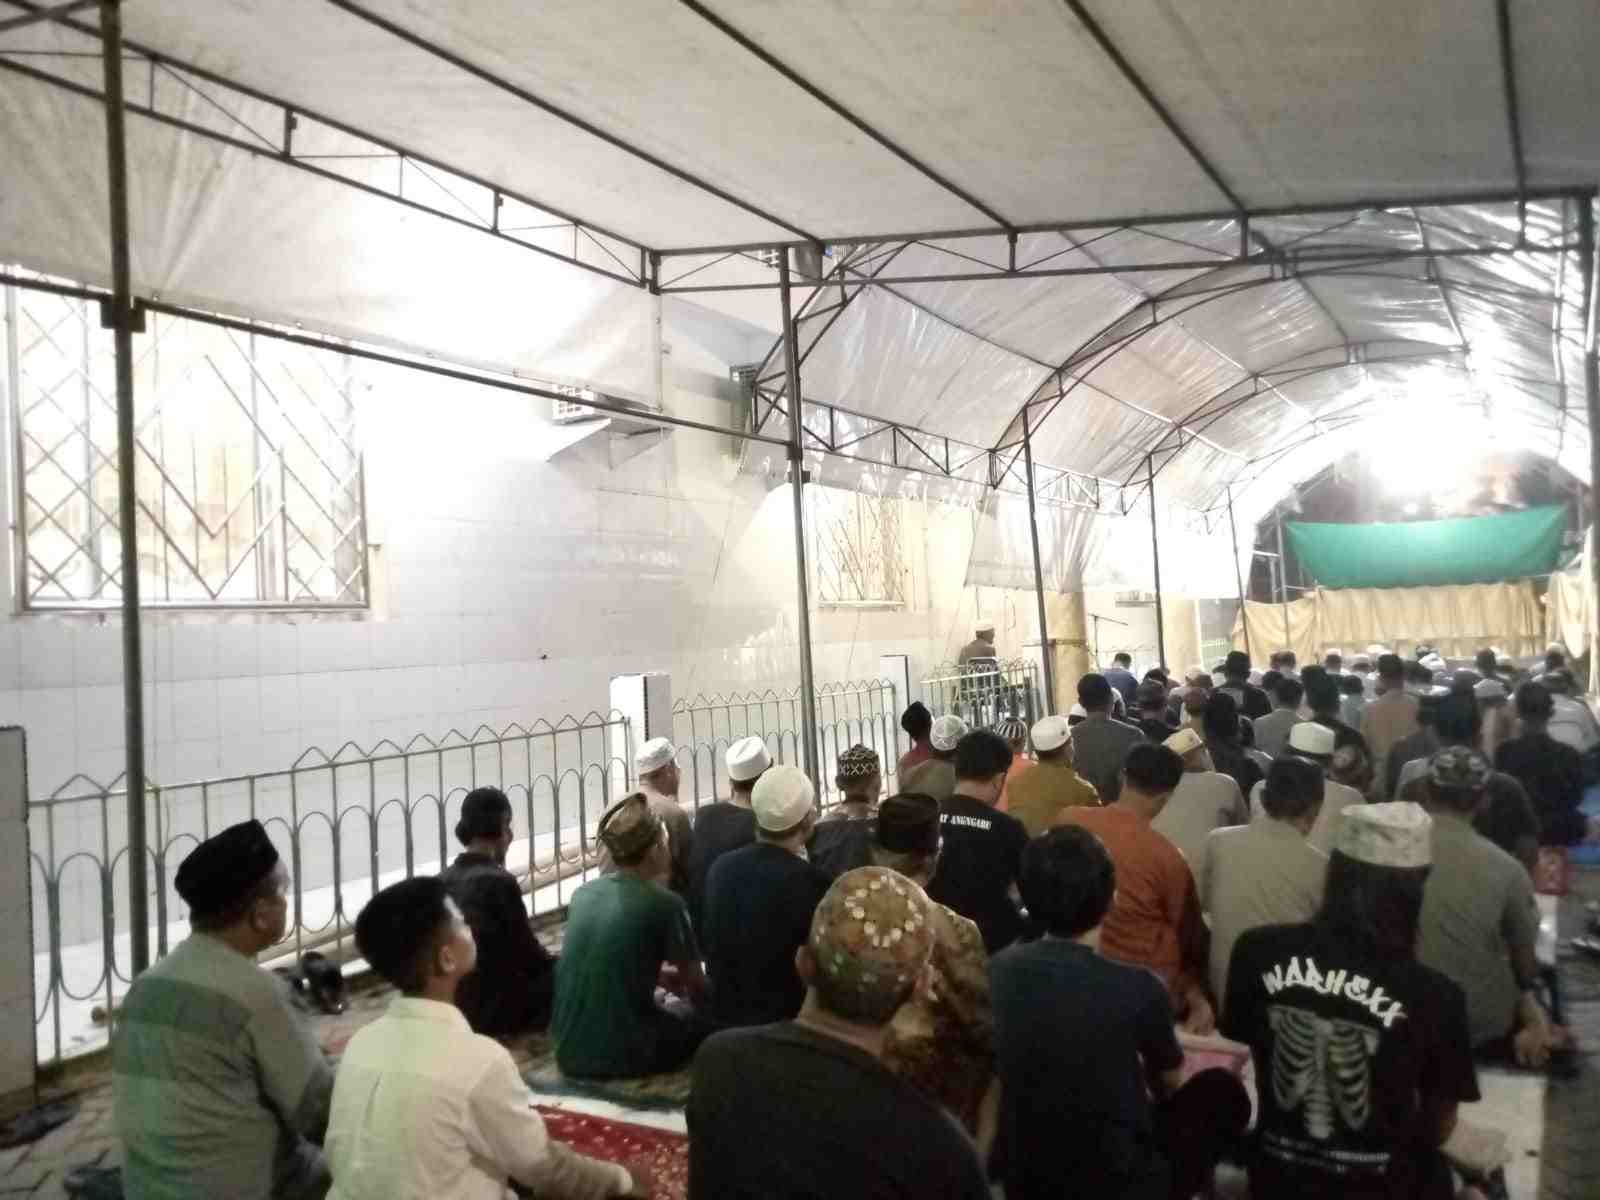 Jamaah Masjid Ittifaqul Jamaah, Makassar pasca kubah runtuh beratap tenda darurat. (Foto: Rakyat.News/Regent Aprianto)